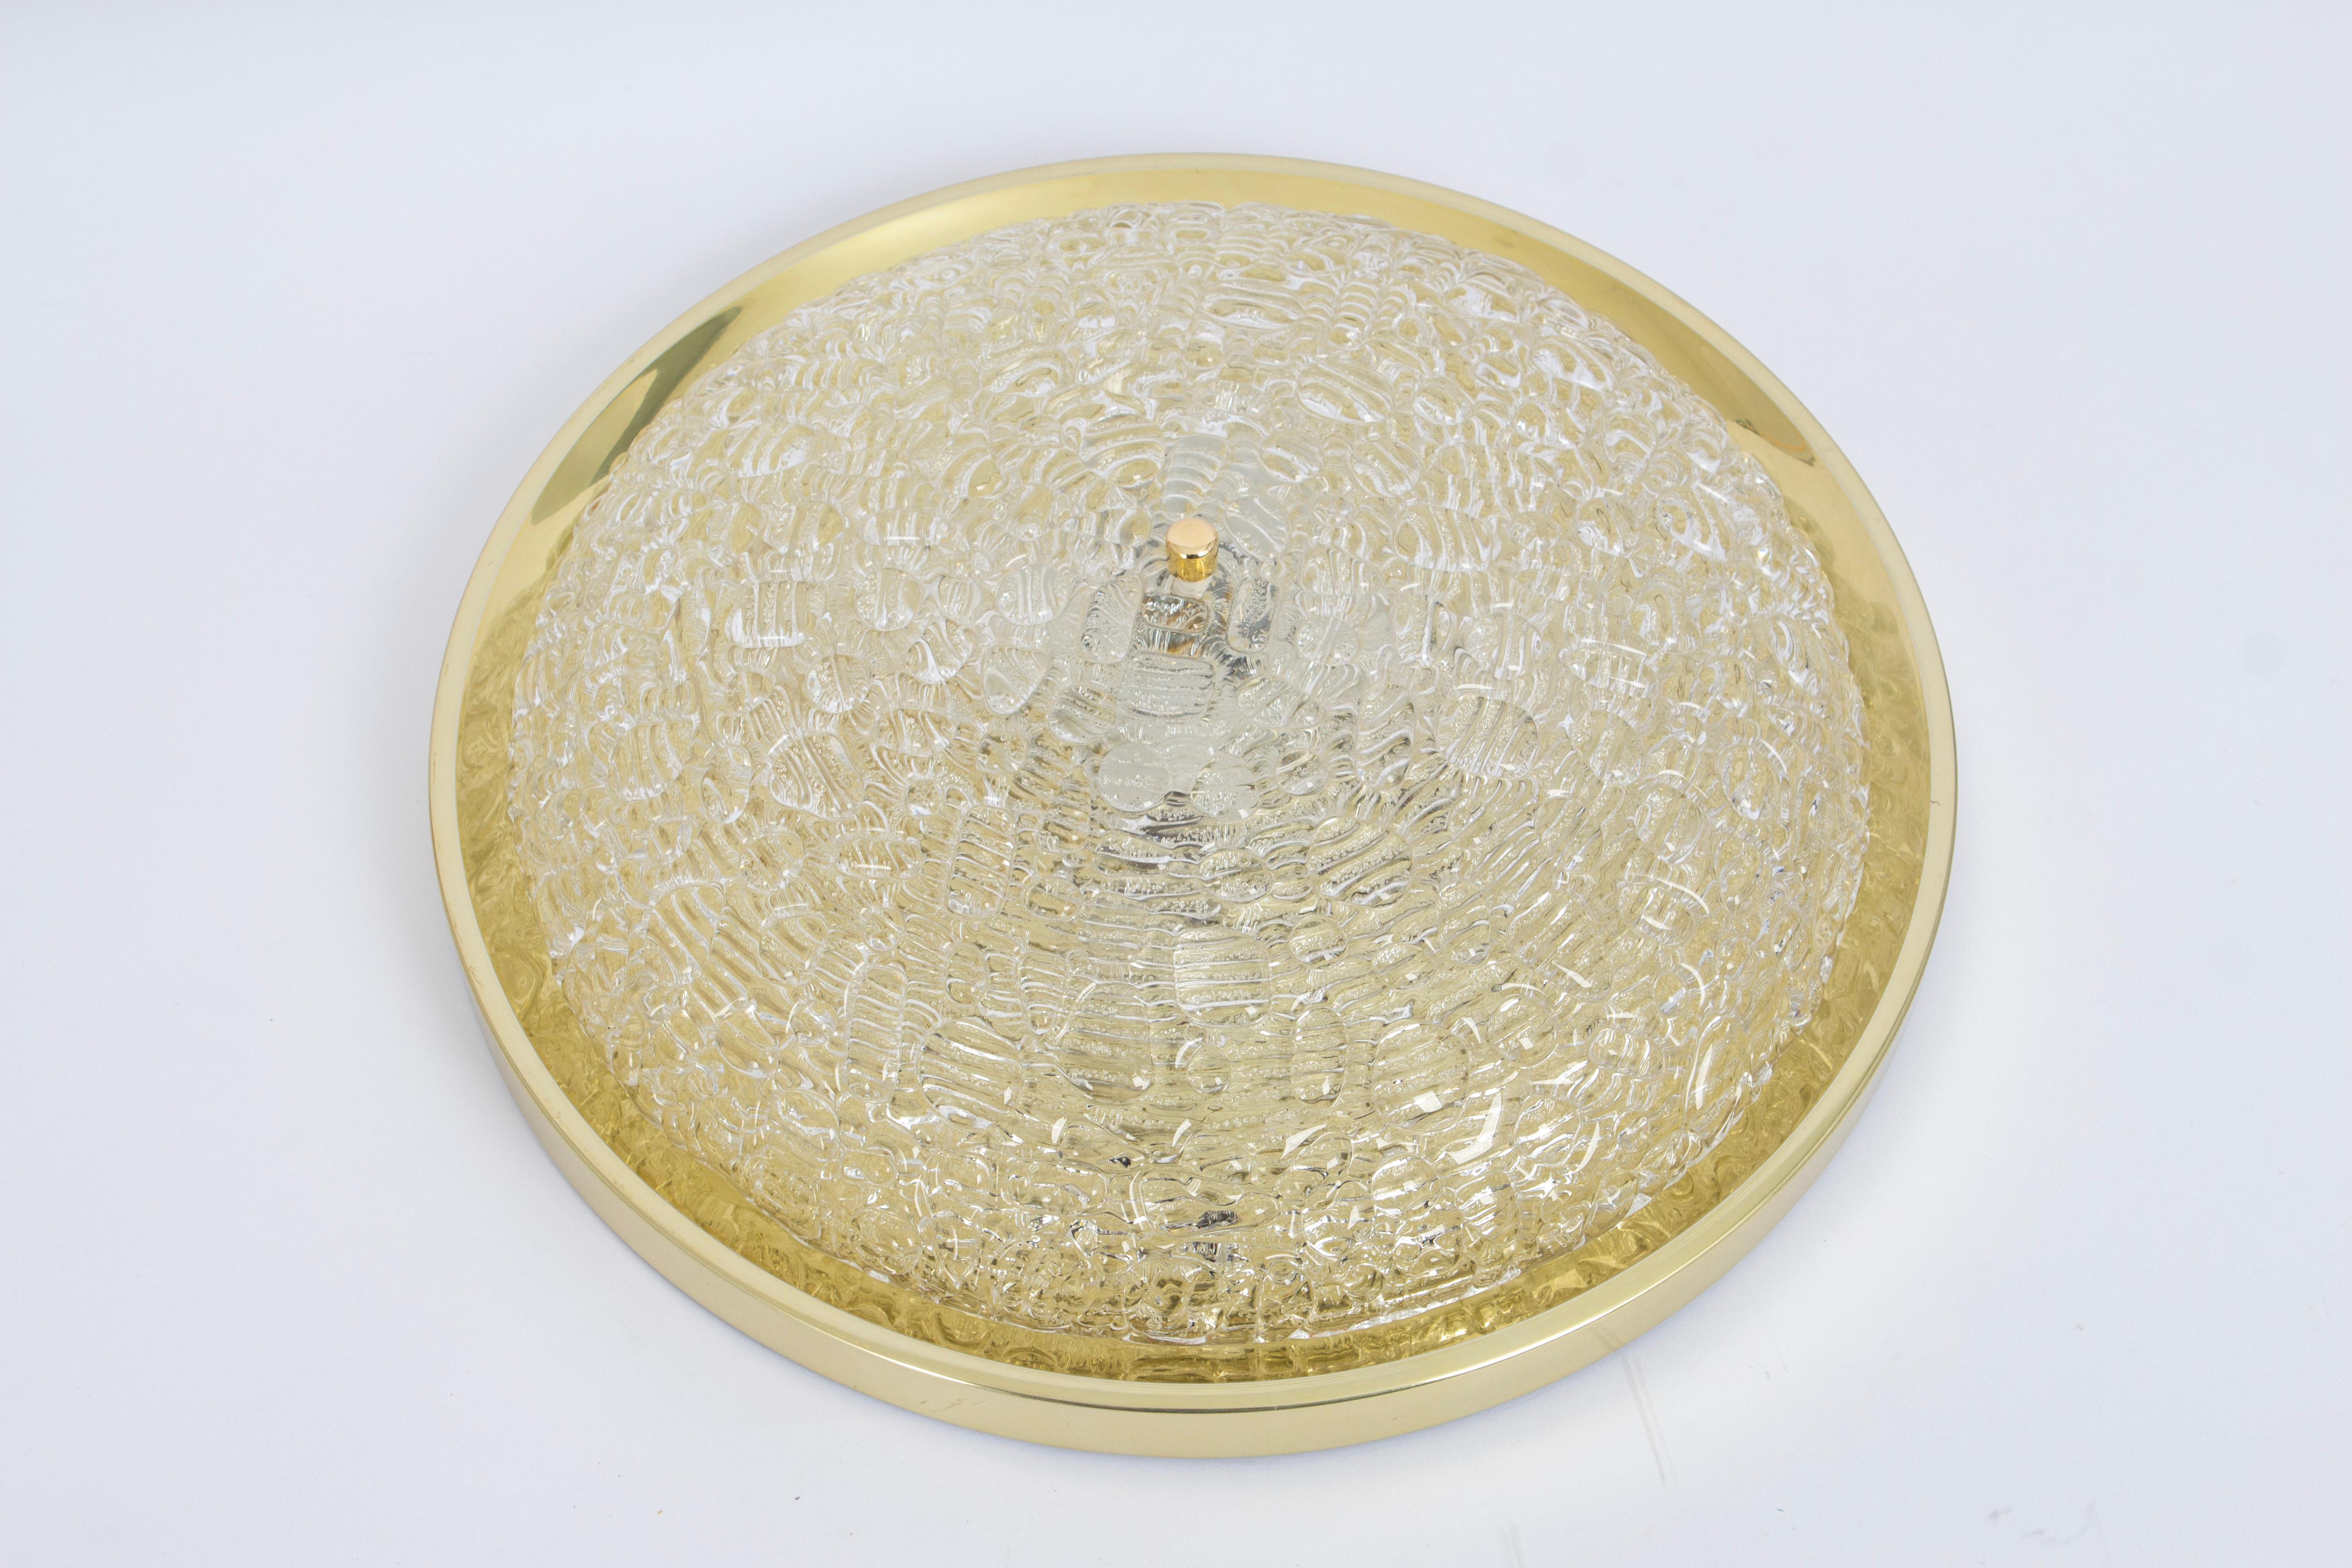 Eine runde biomorphe Wandleuchte aus klarem Glas, entworfen von Doira Leuchten, hergestellt in Deutschland, ca. 1970er Jahre.

Hochwertig und in sehr gutem Zustand. Gereinigt, gut verkabelt und einsatzbereit.

Die Leuchte benötigt 4 x E27 Standard